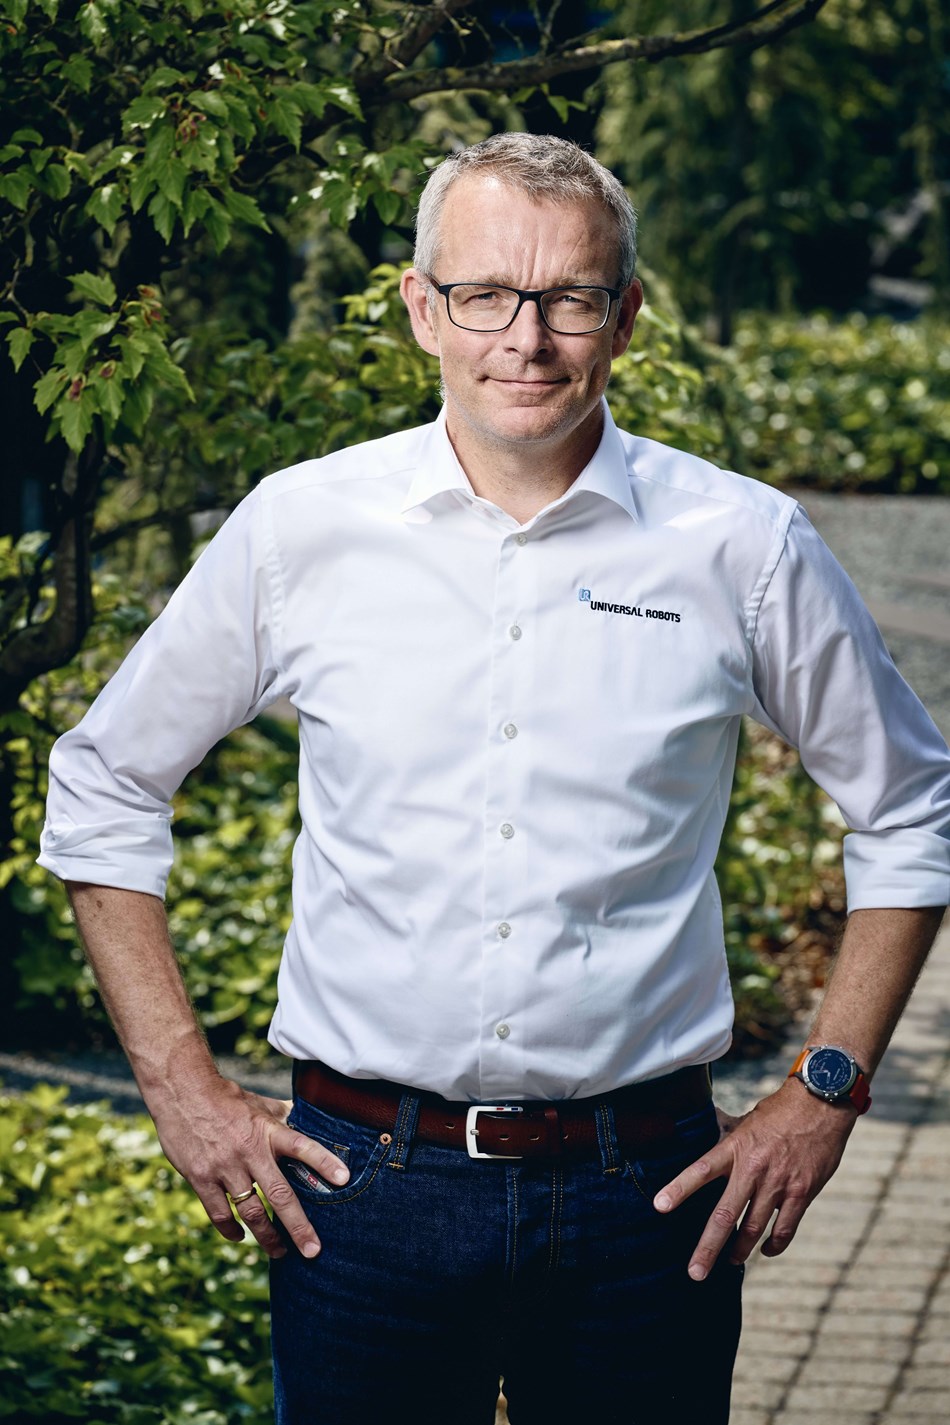 Man sieht hier Kim Nørgaard Andreasen, CFO bei Universal Robots. Er hat eine Brille an und posiert zu Kamera mit seinen Händen an seinen Hüften.